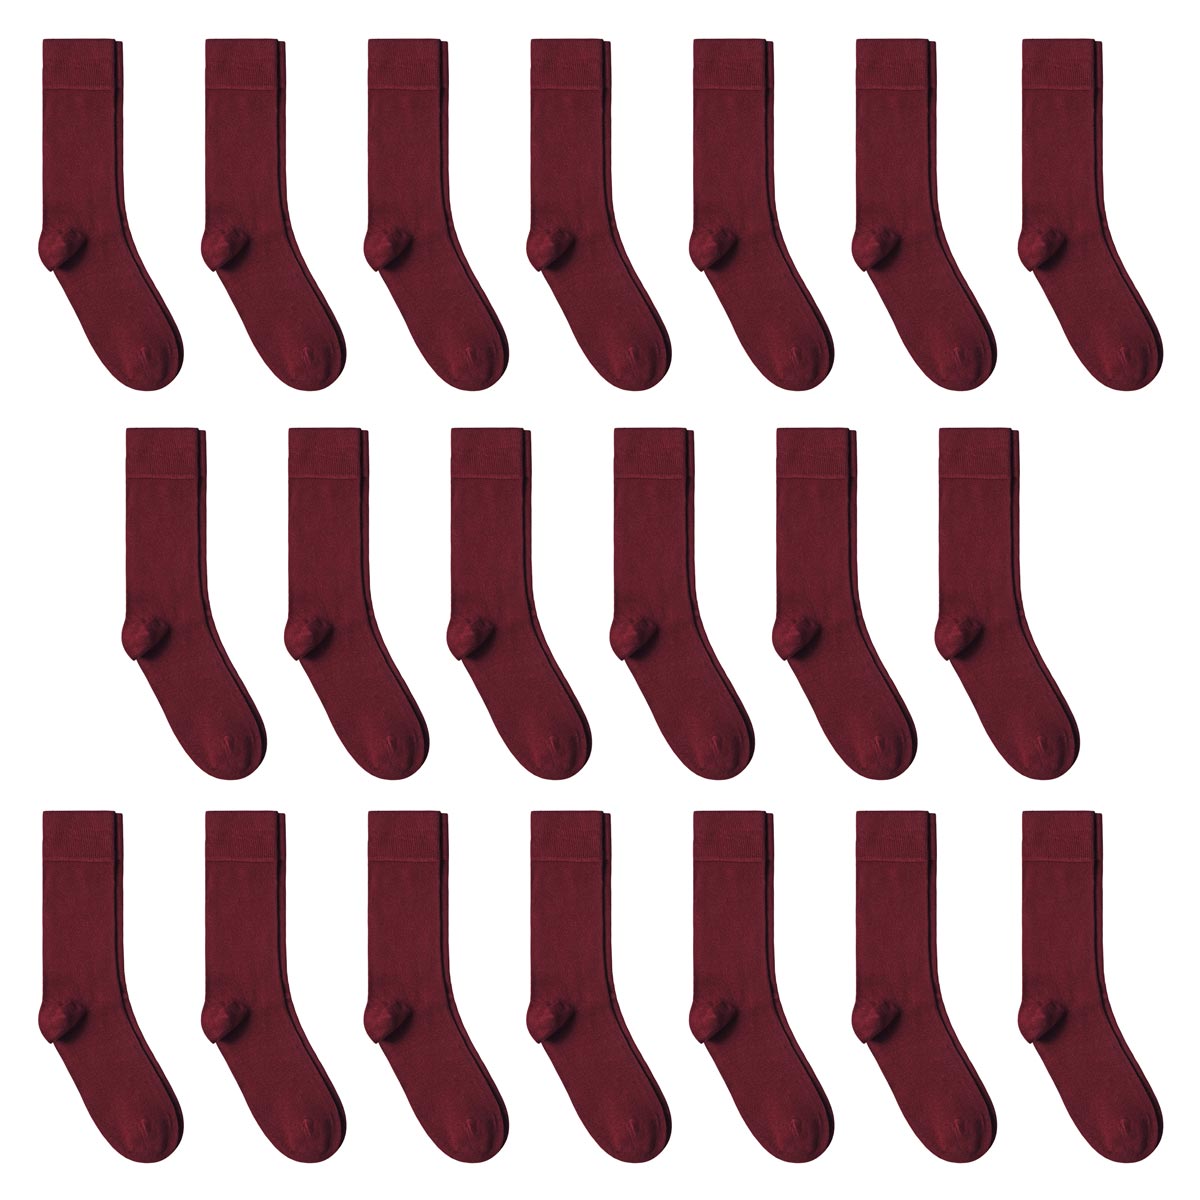 CH-00639_A12-1--_Lot-20-paires-de-chaussettes-homme-rouges-fonce-unies